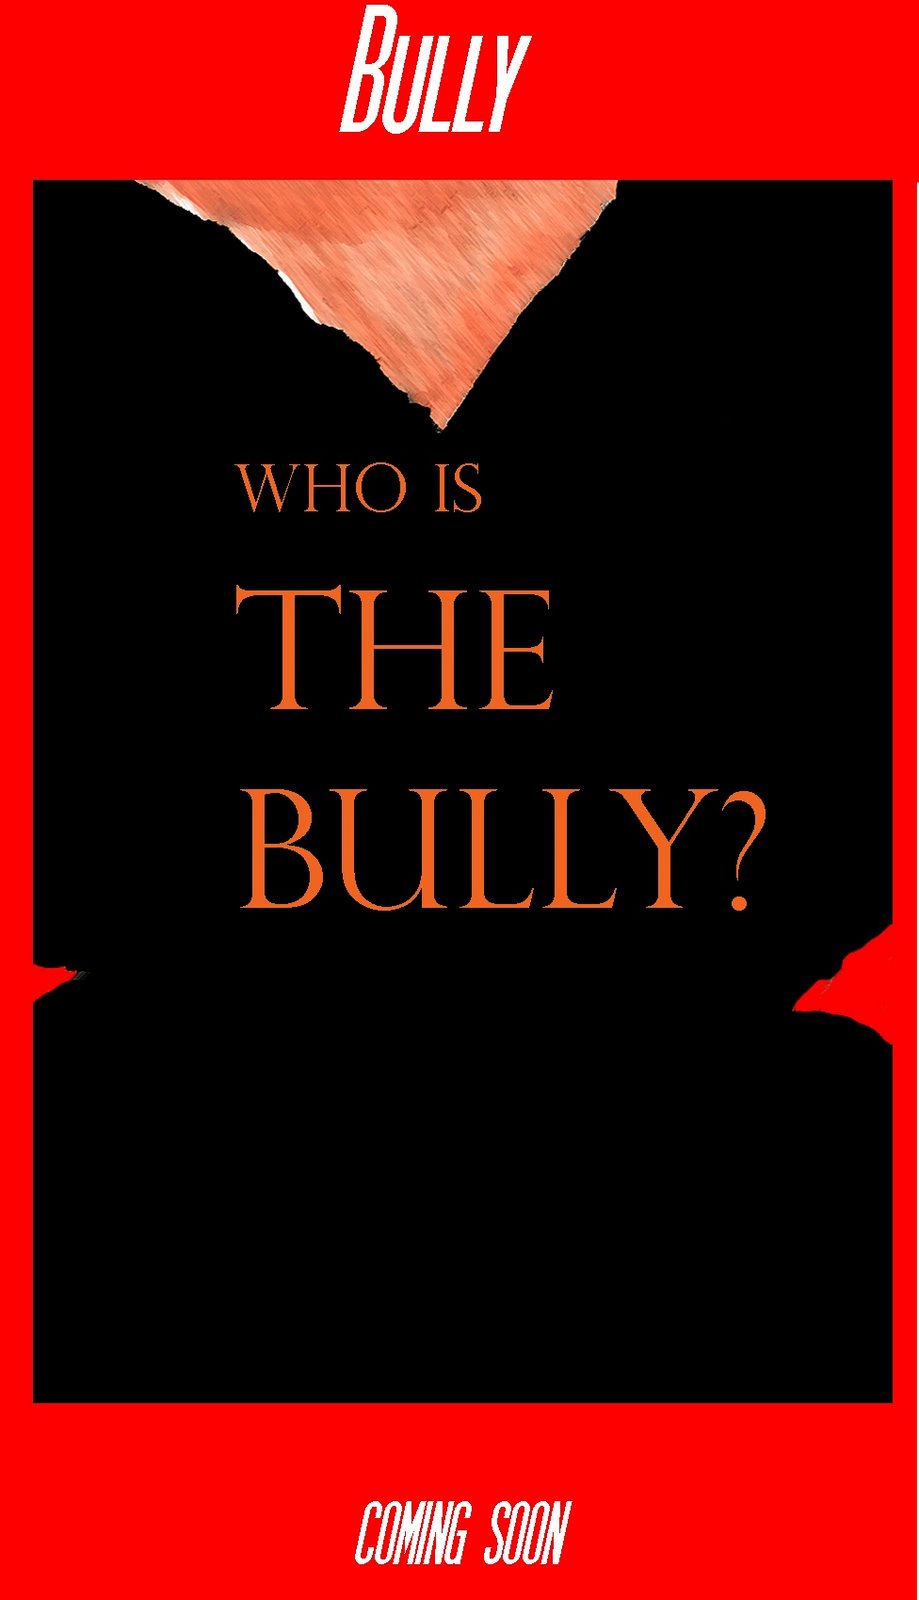 [bully+poster.jpg]